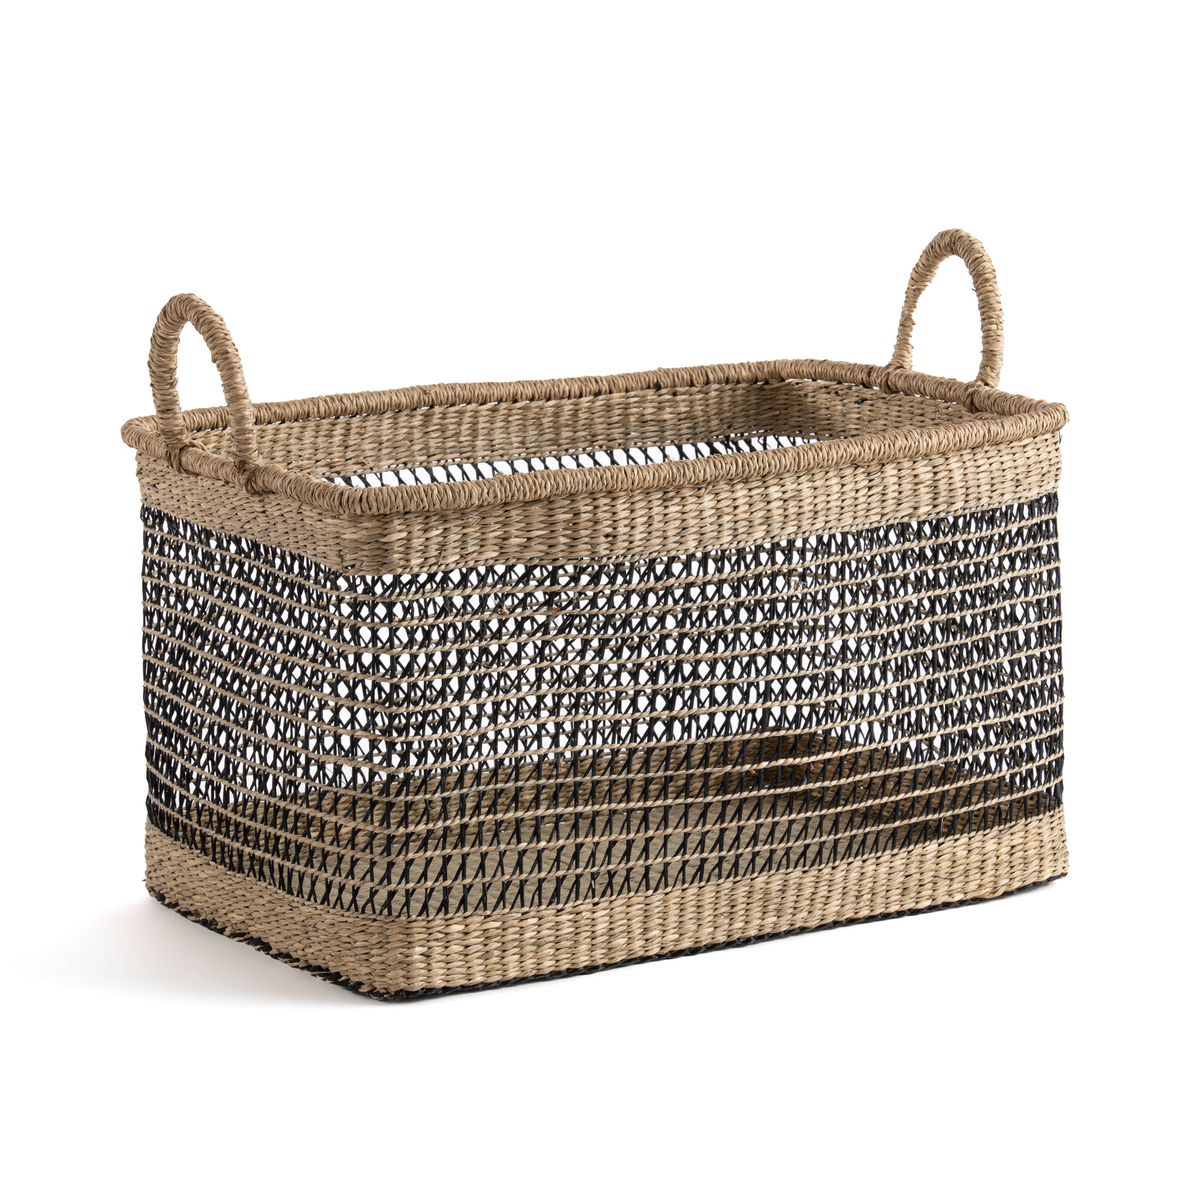 Kezia Rectangular Woven Grass Basket